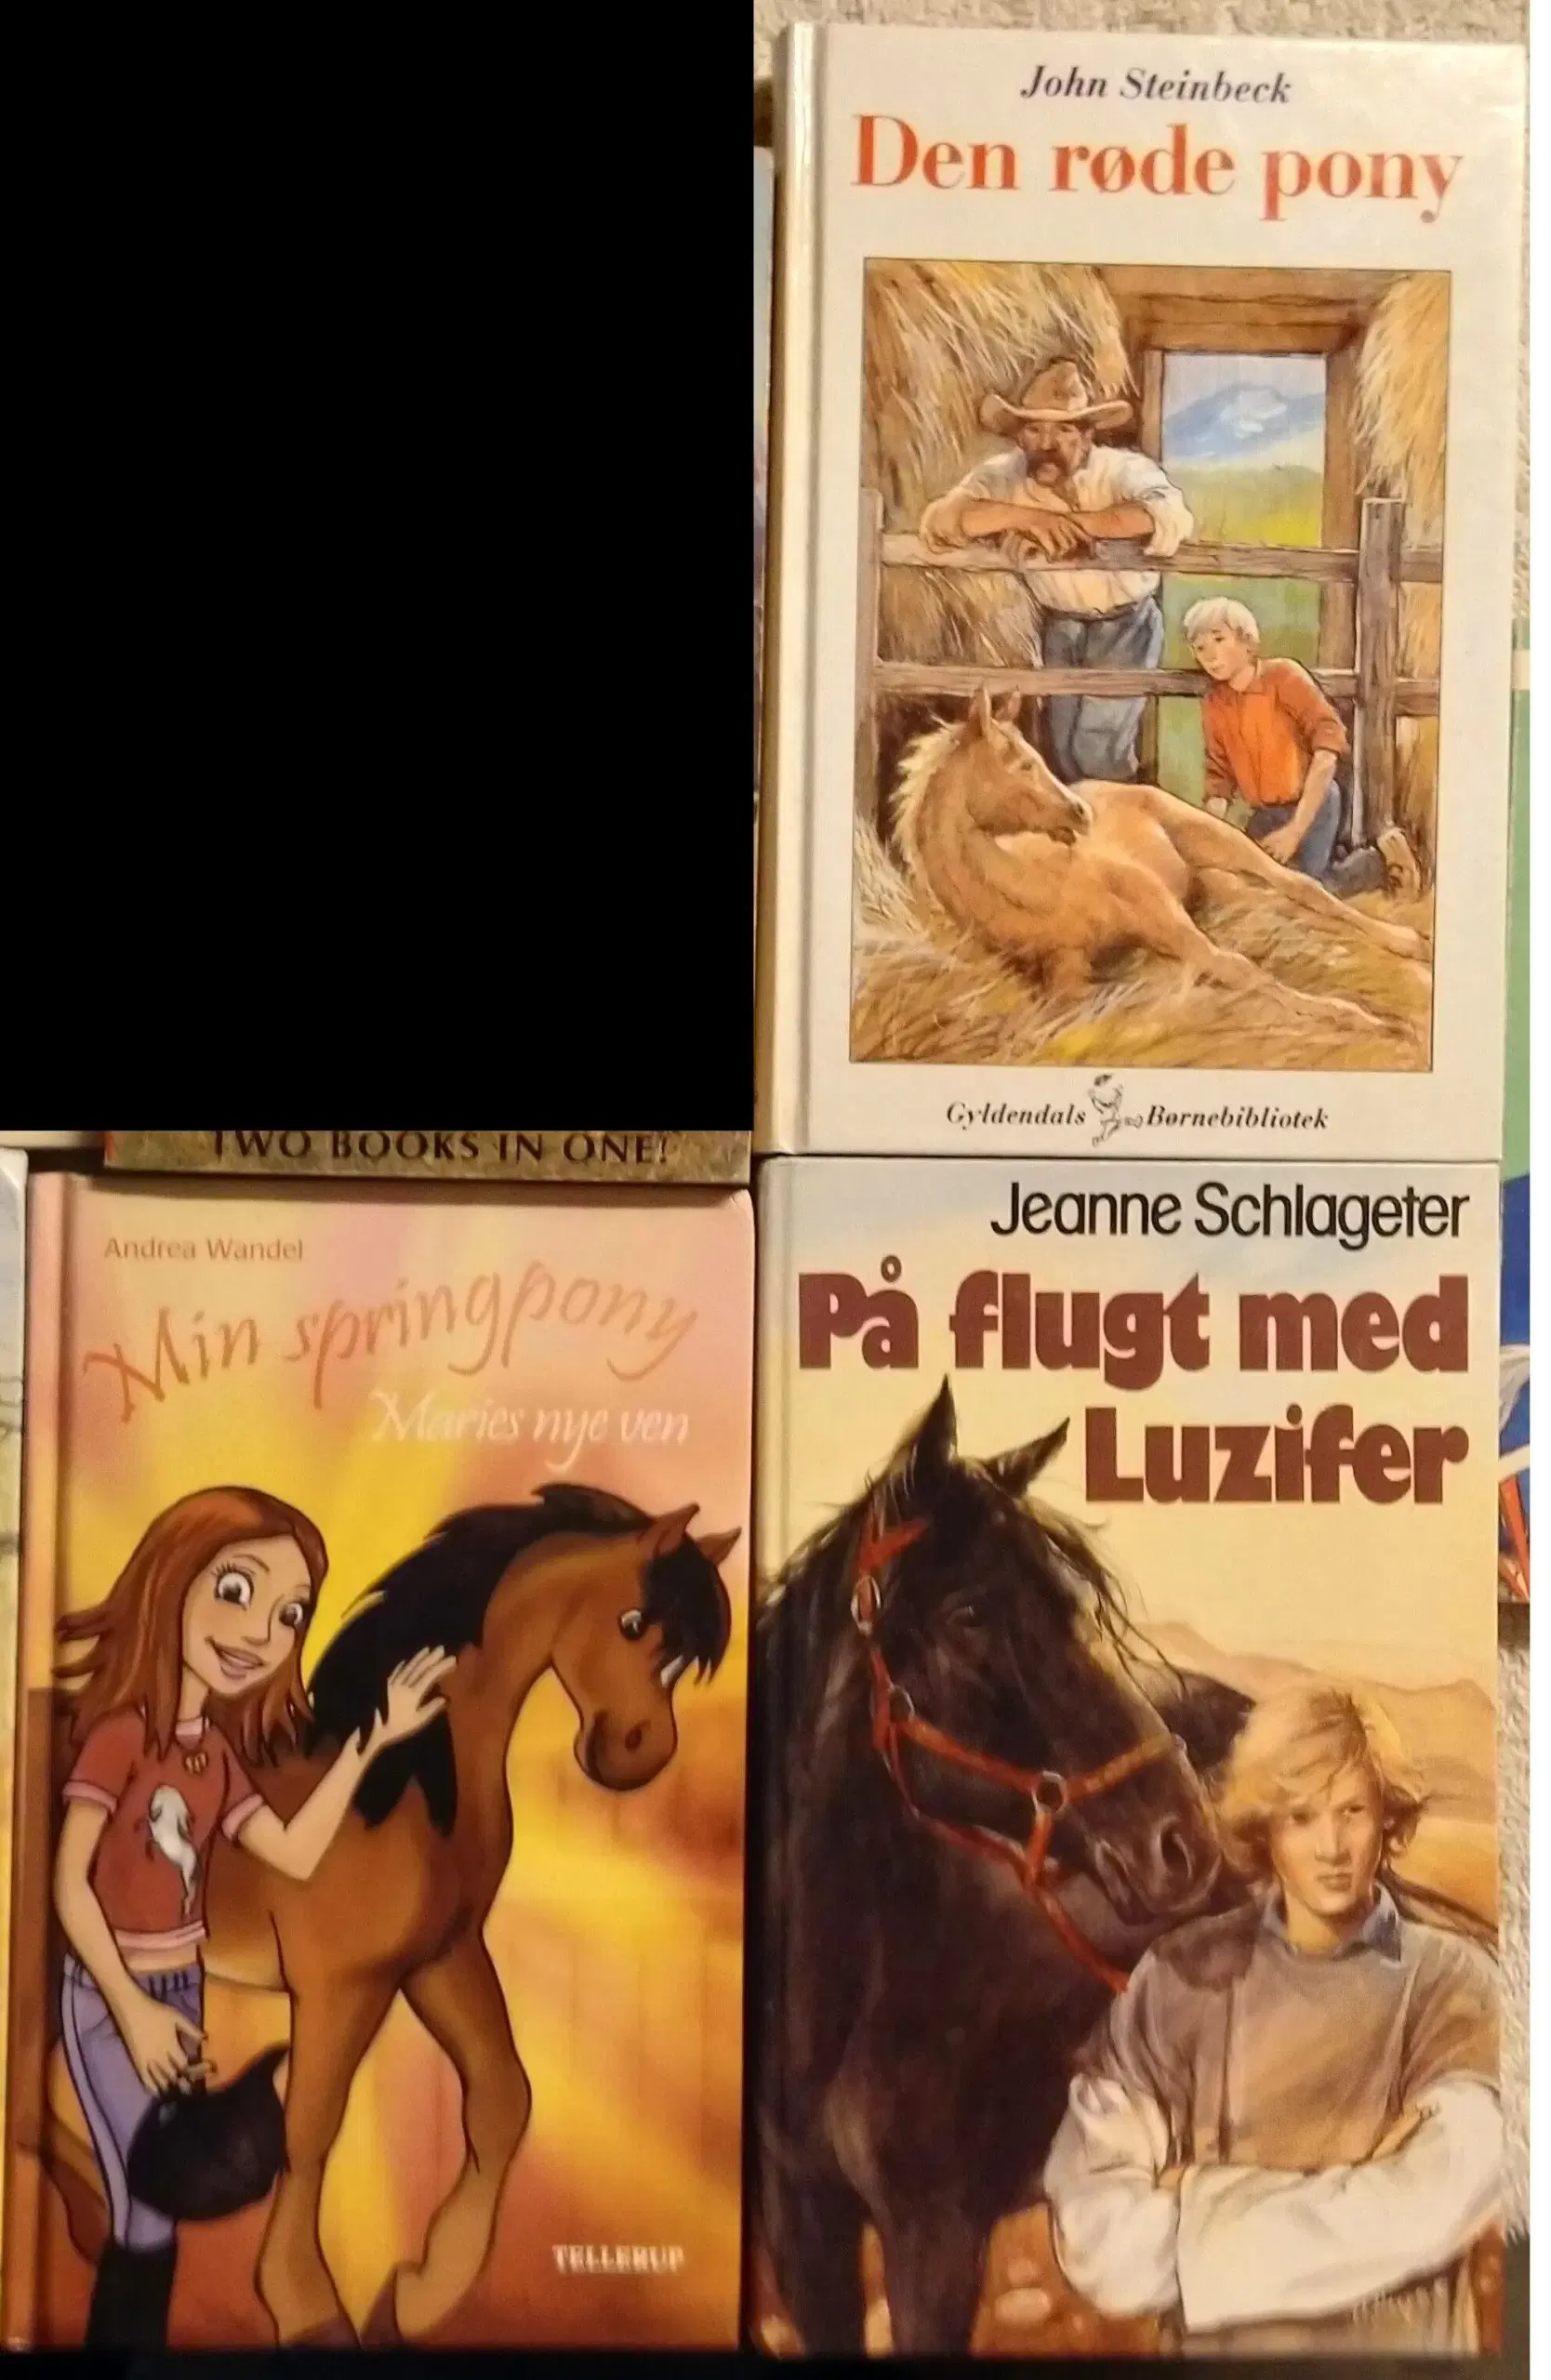 Hestebøger